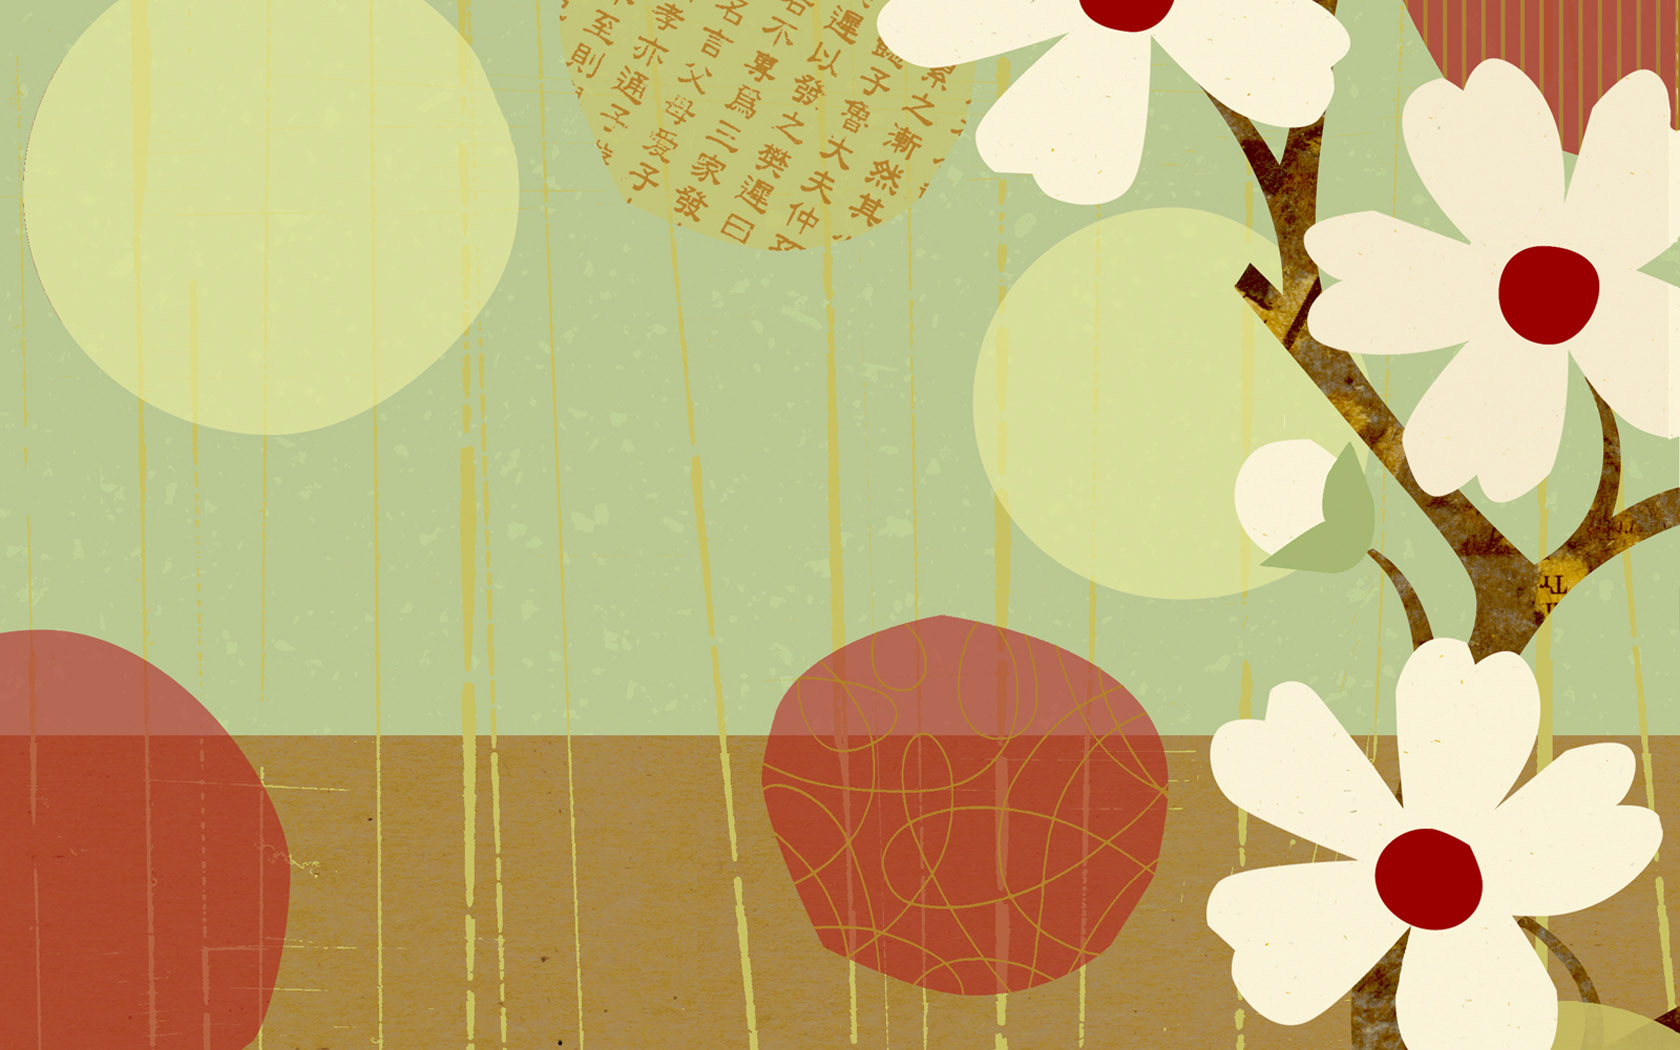 壁纸1680x1050 花卉图案设计 日本樱花插画壁纸壁纸 艺术与抽象花卉壁纸壁纸 艺术与抽象花卉壁纸图片 艺术与抽象花卉壁纸素材 花卉壁纸 花卉图库 花卉图片素材桌面壁纸